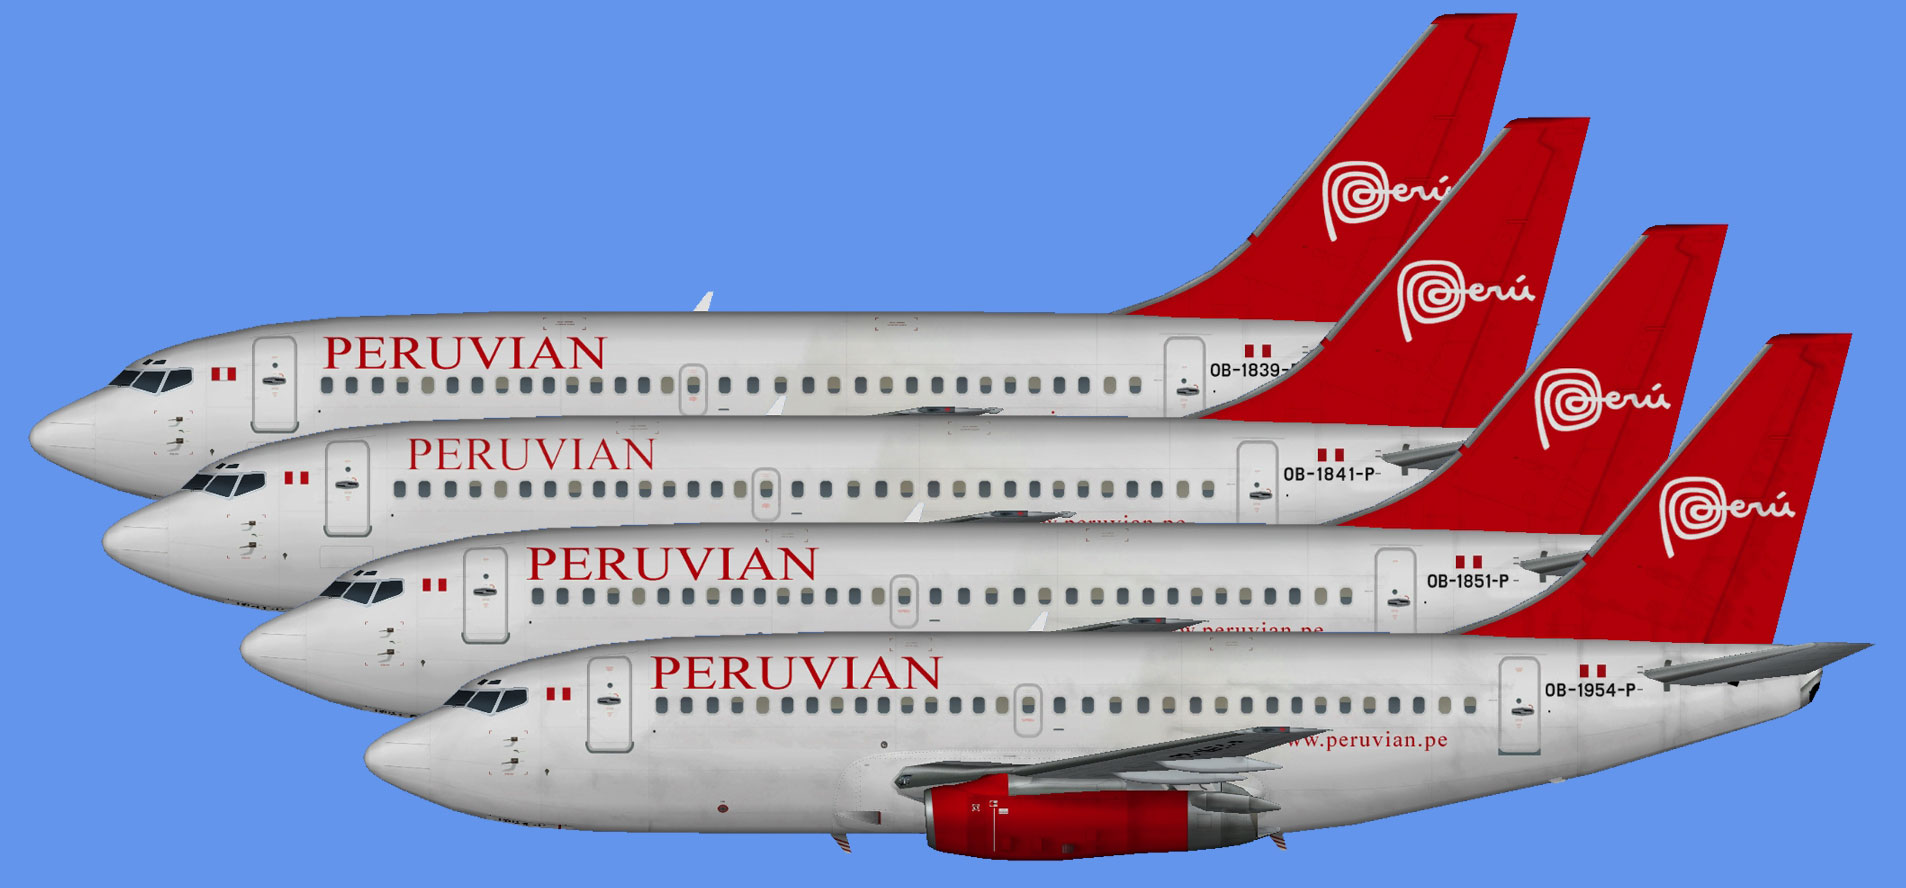 Peruvian Airlines Boeing 737-200